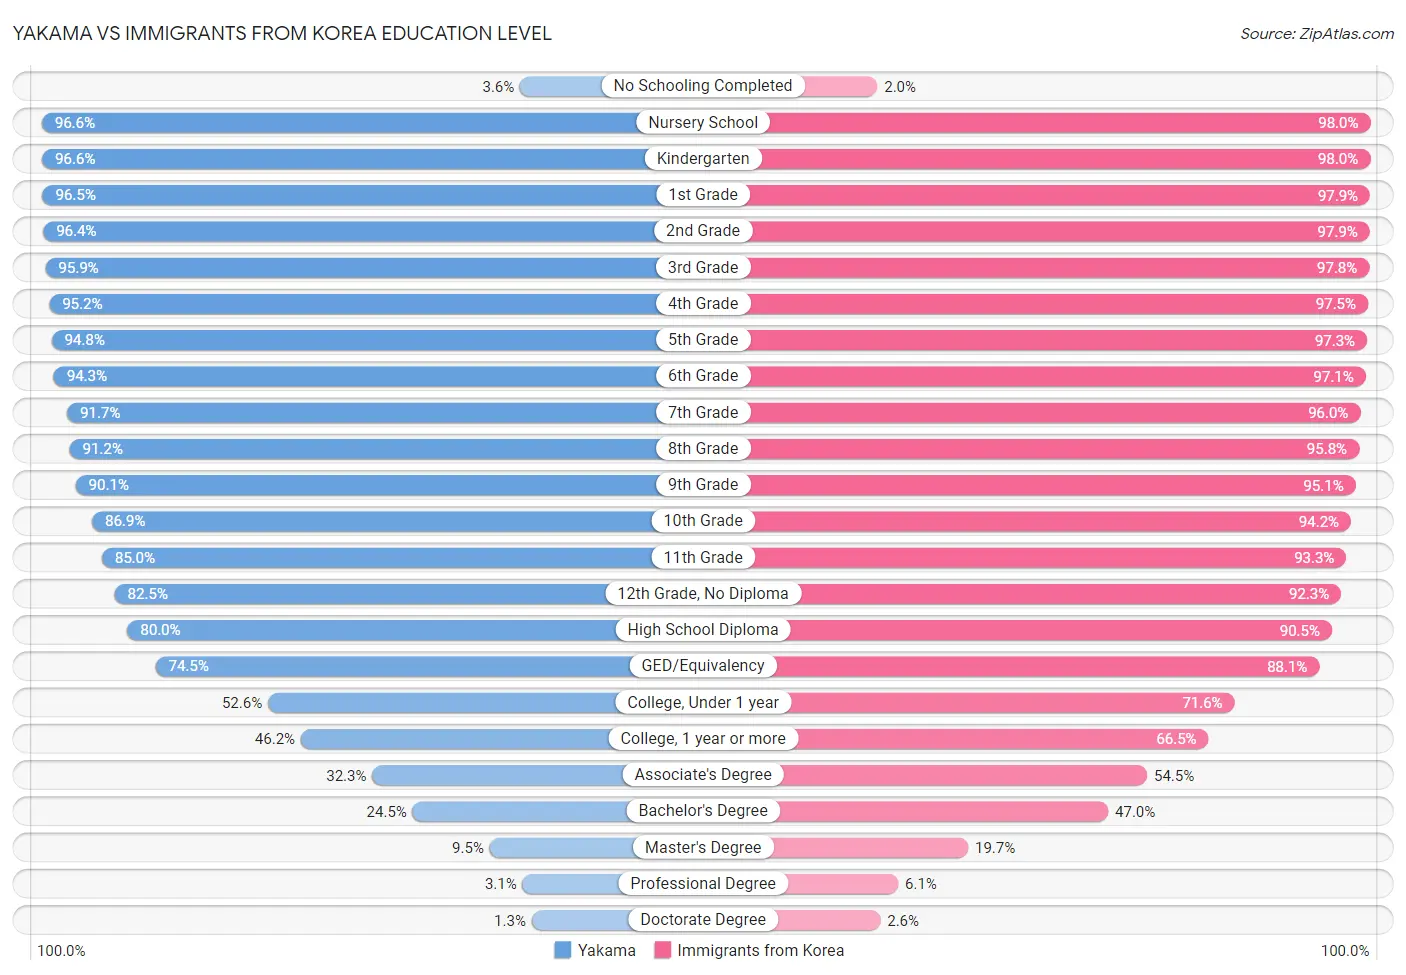 Yakama vs Immigrants from Korea Education Level